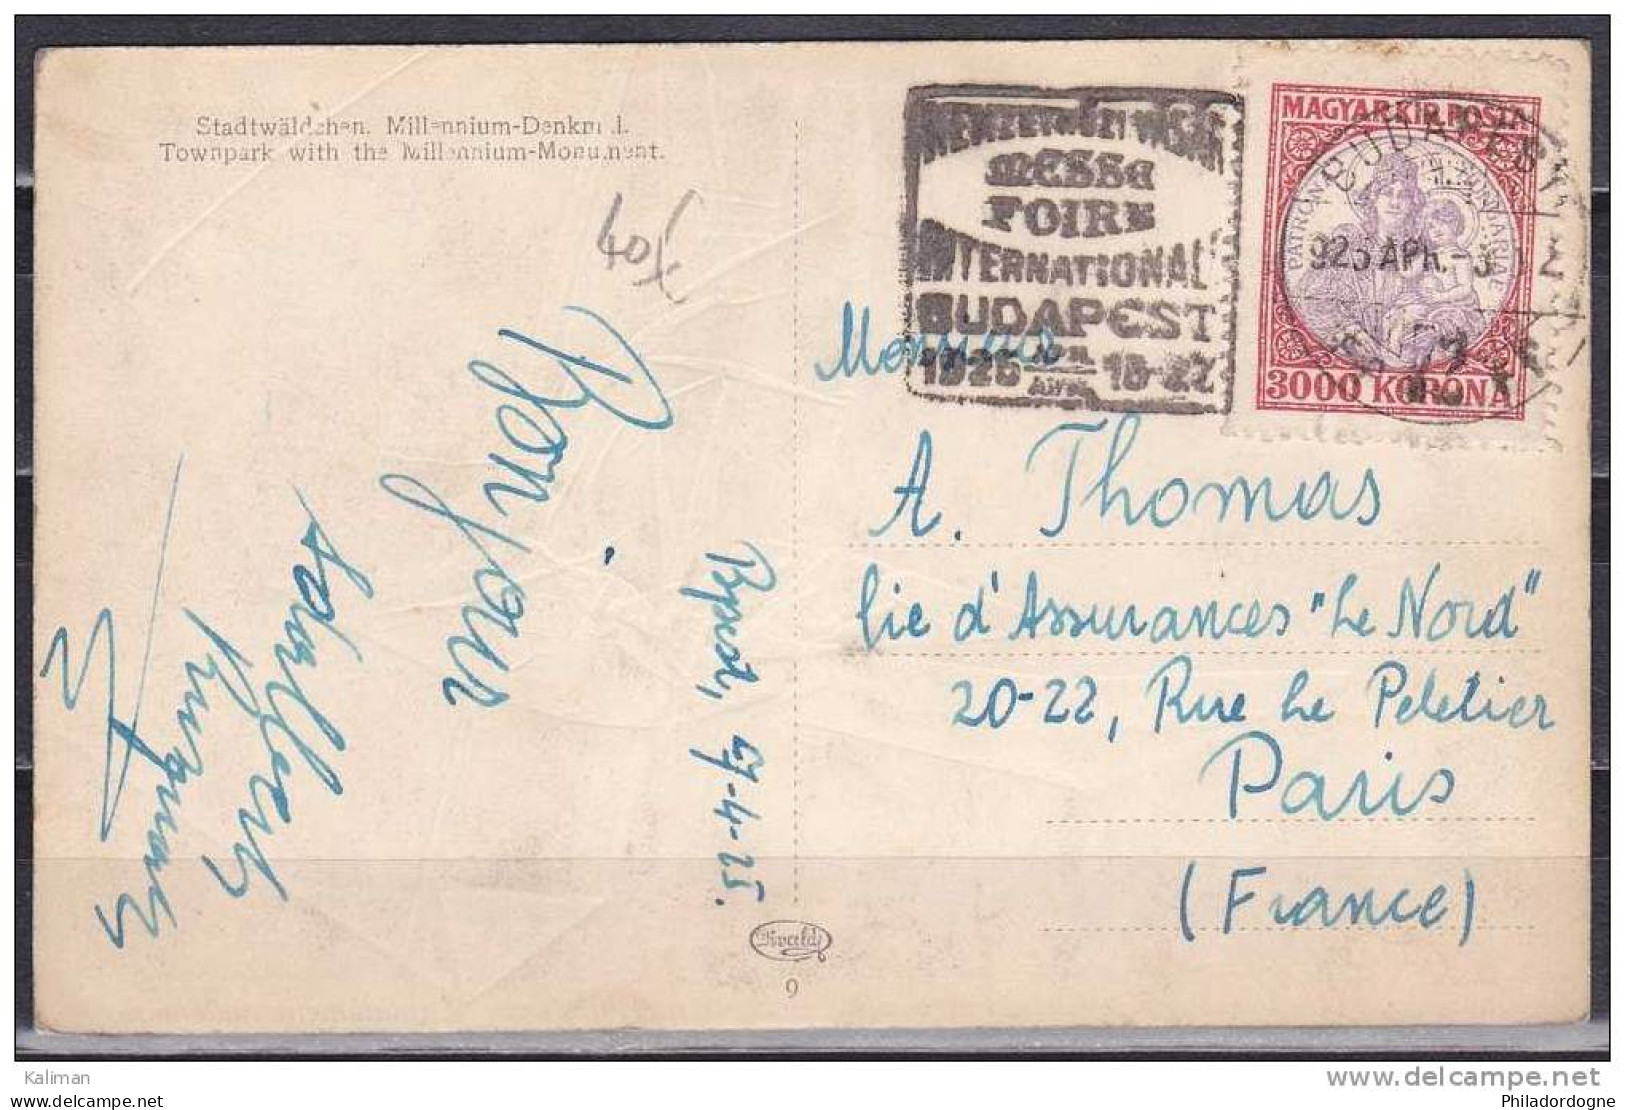 Hongrie Carte Postale Yvert N° 365 Oblitéré - Avril 1925 - Messe Foire Internationale De Budapest Pour La France - Postmark Collection